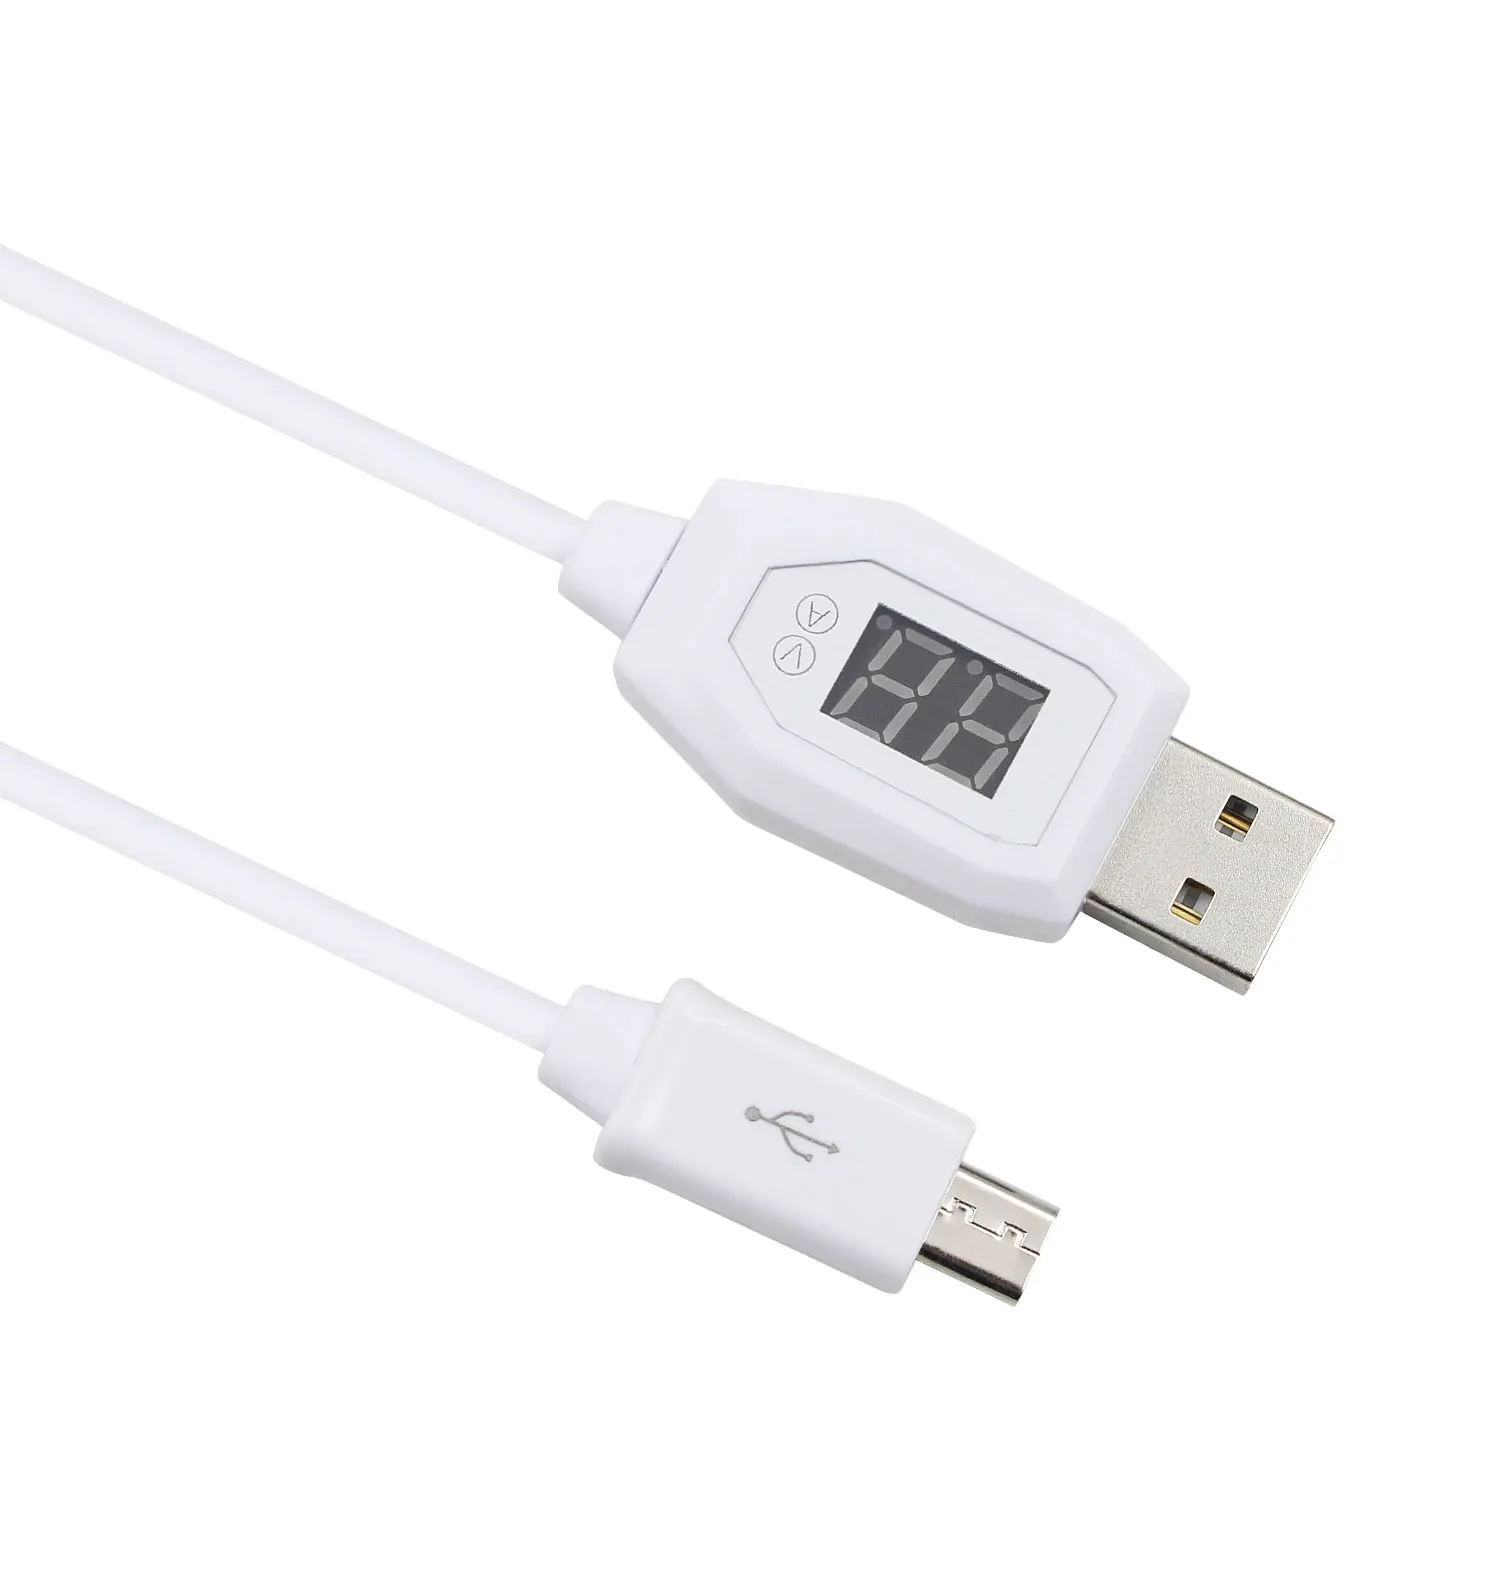 USB кабель для зарядки и передачи данных с цифровым индикатором Amazon Kindle Fire